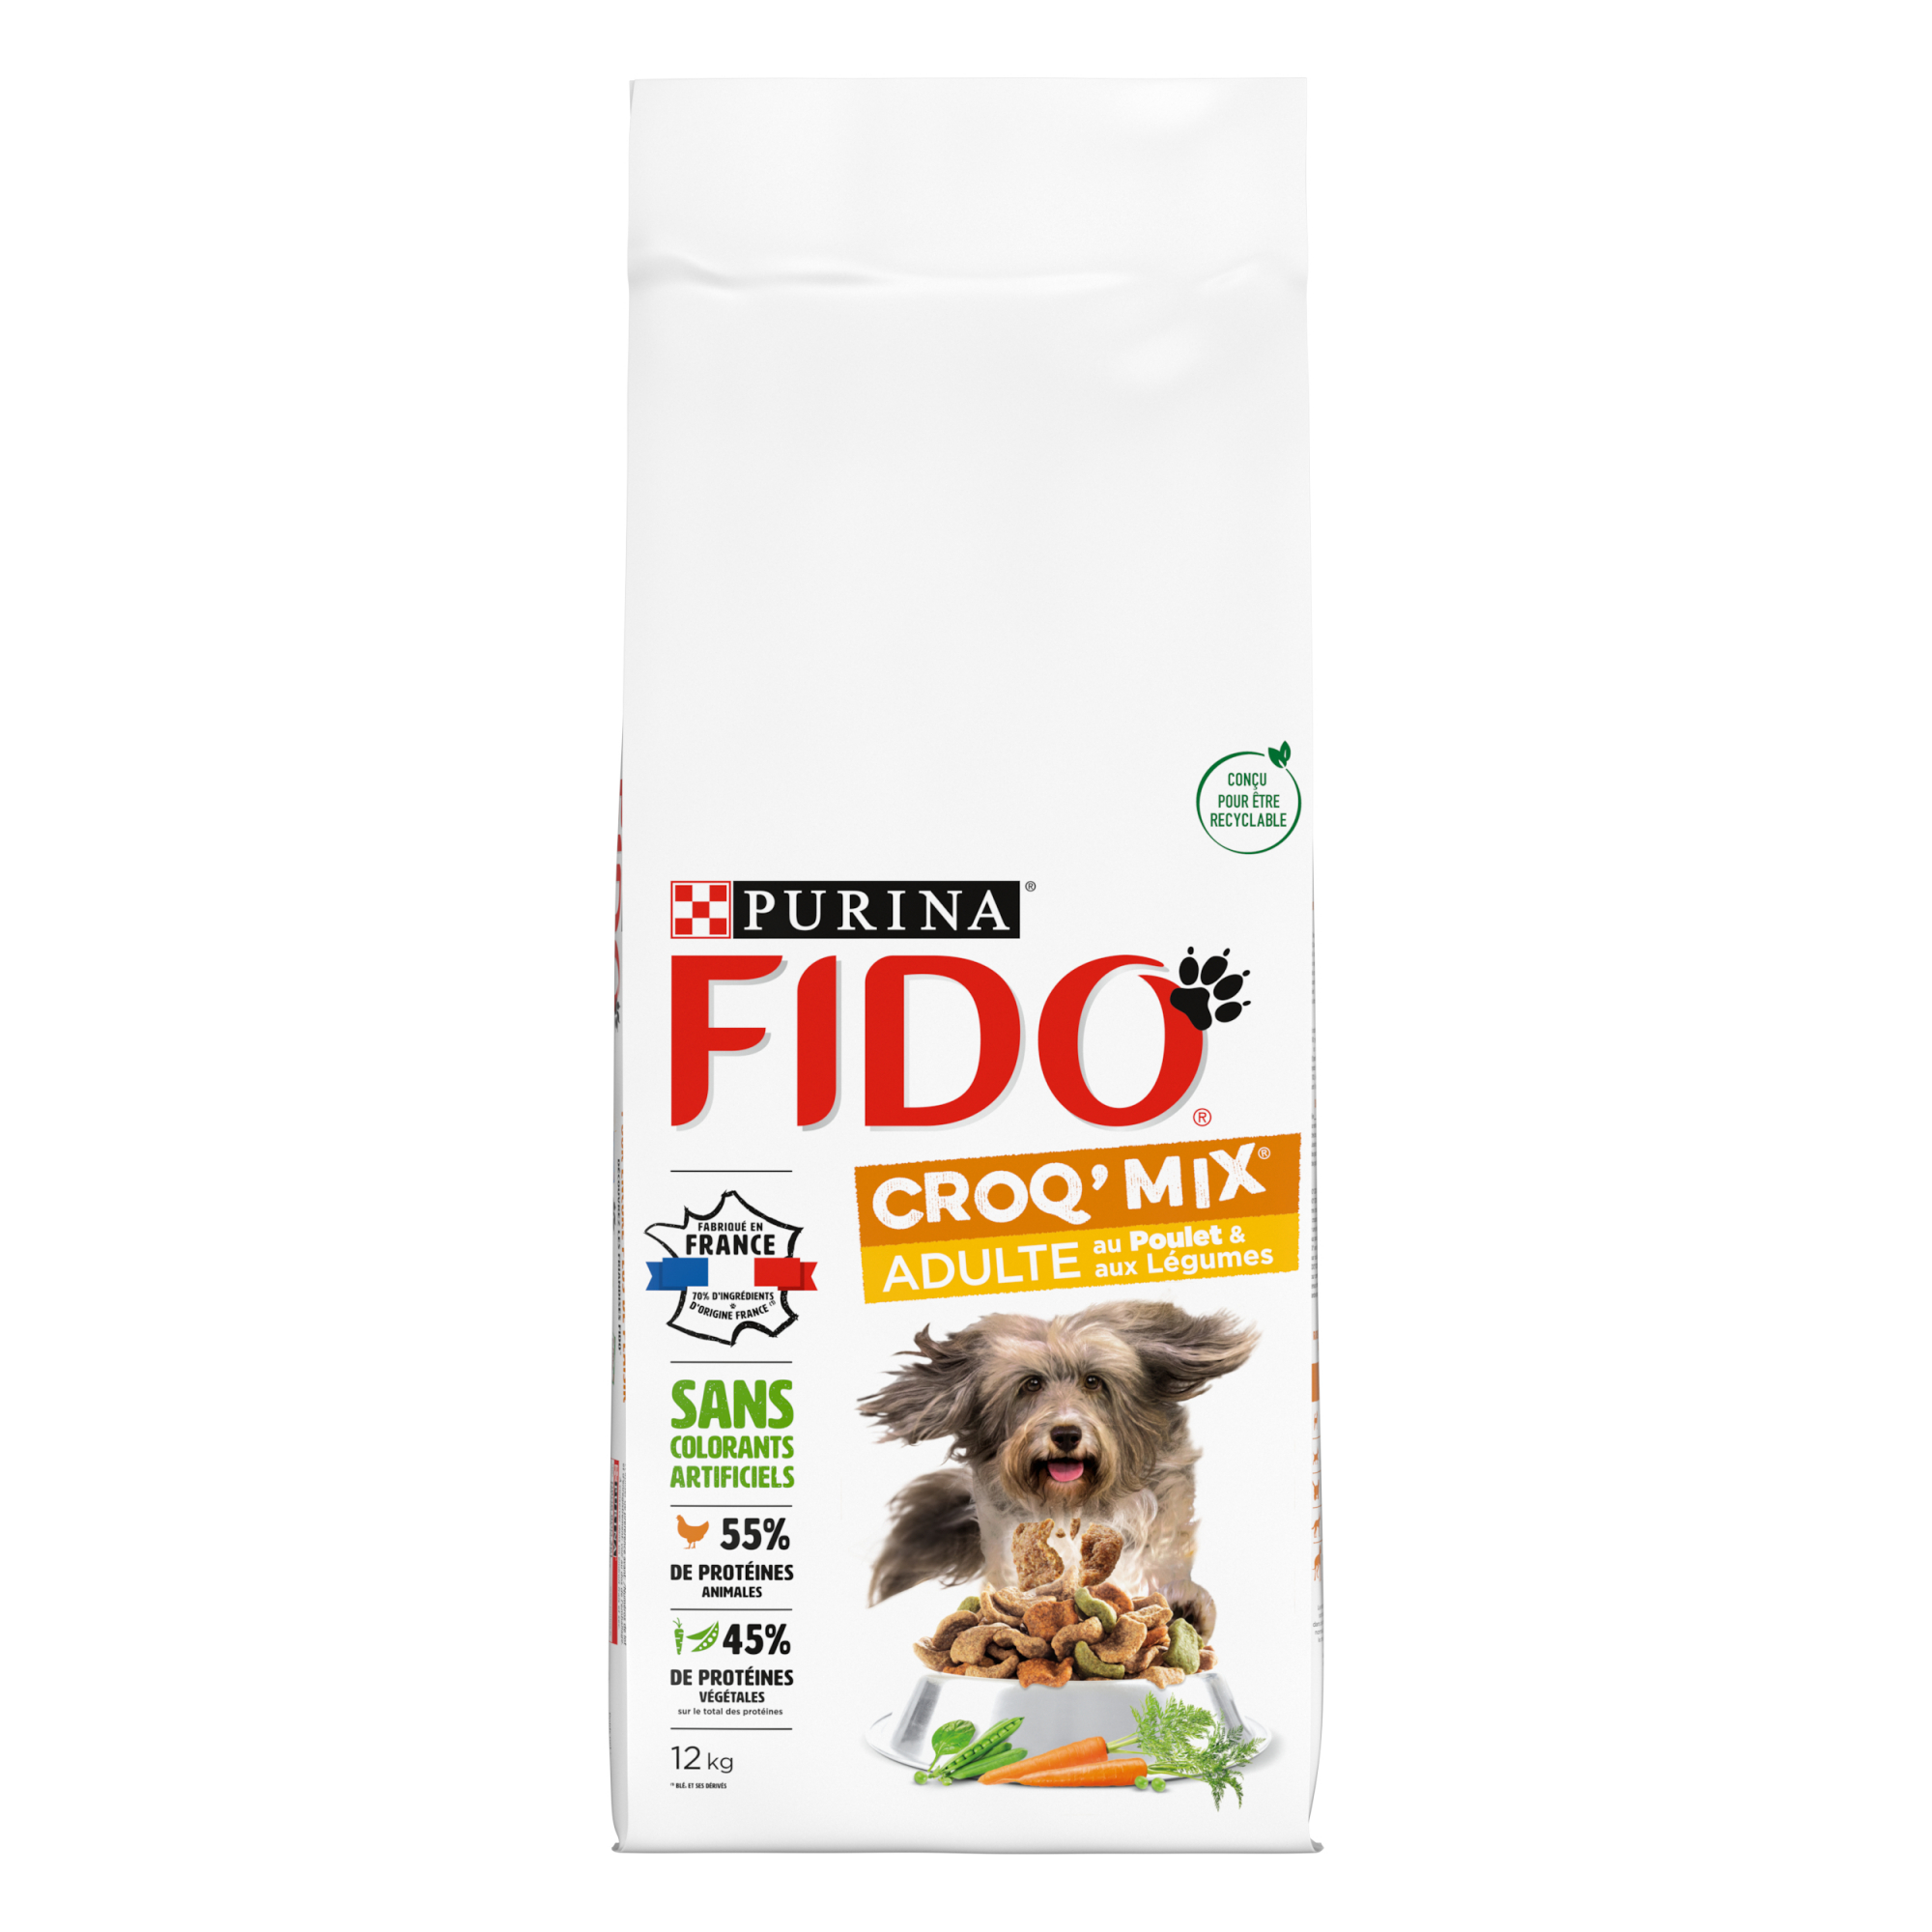 FIDO Croq Mix com carne de vaca ou frango para cães adultos